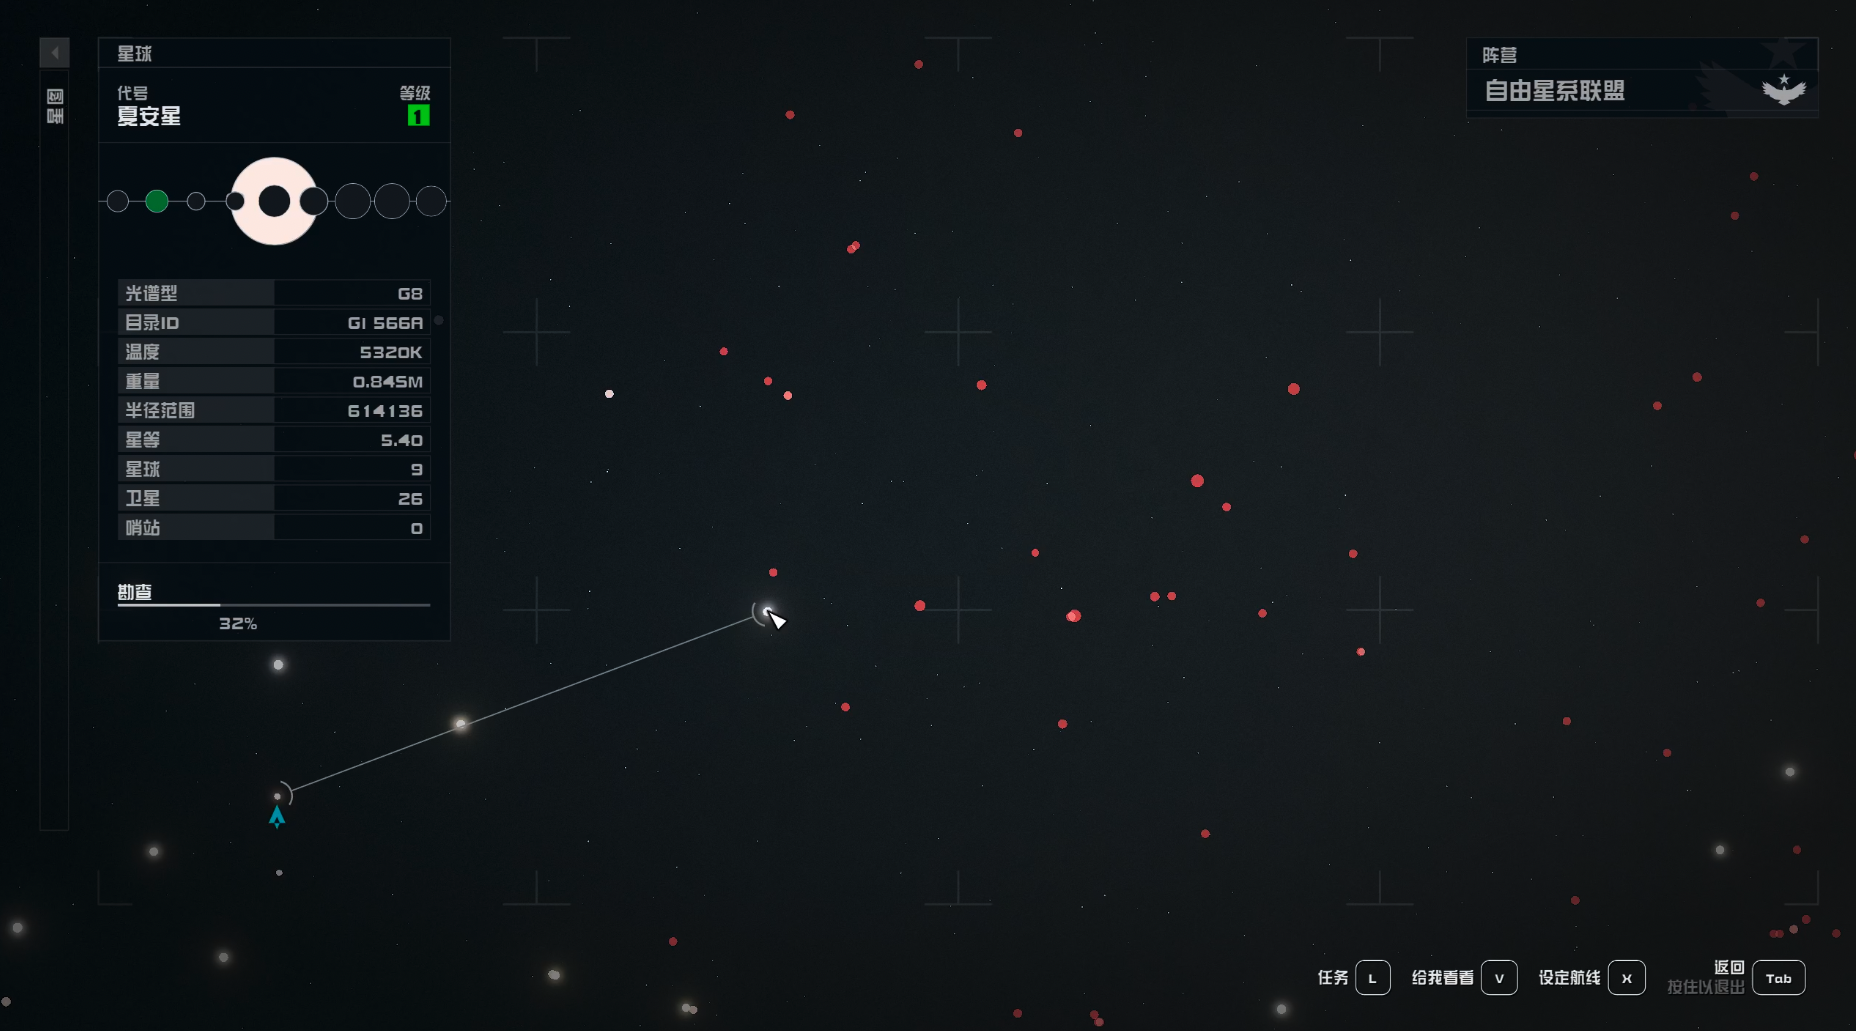 圖中的每一個紅點都是未探索的一個恆星系，這大概是整個星圖的四分之一不到